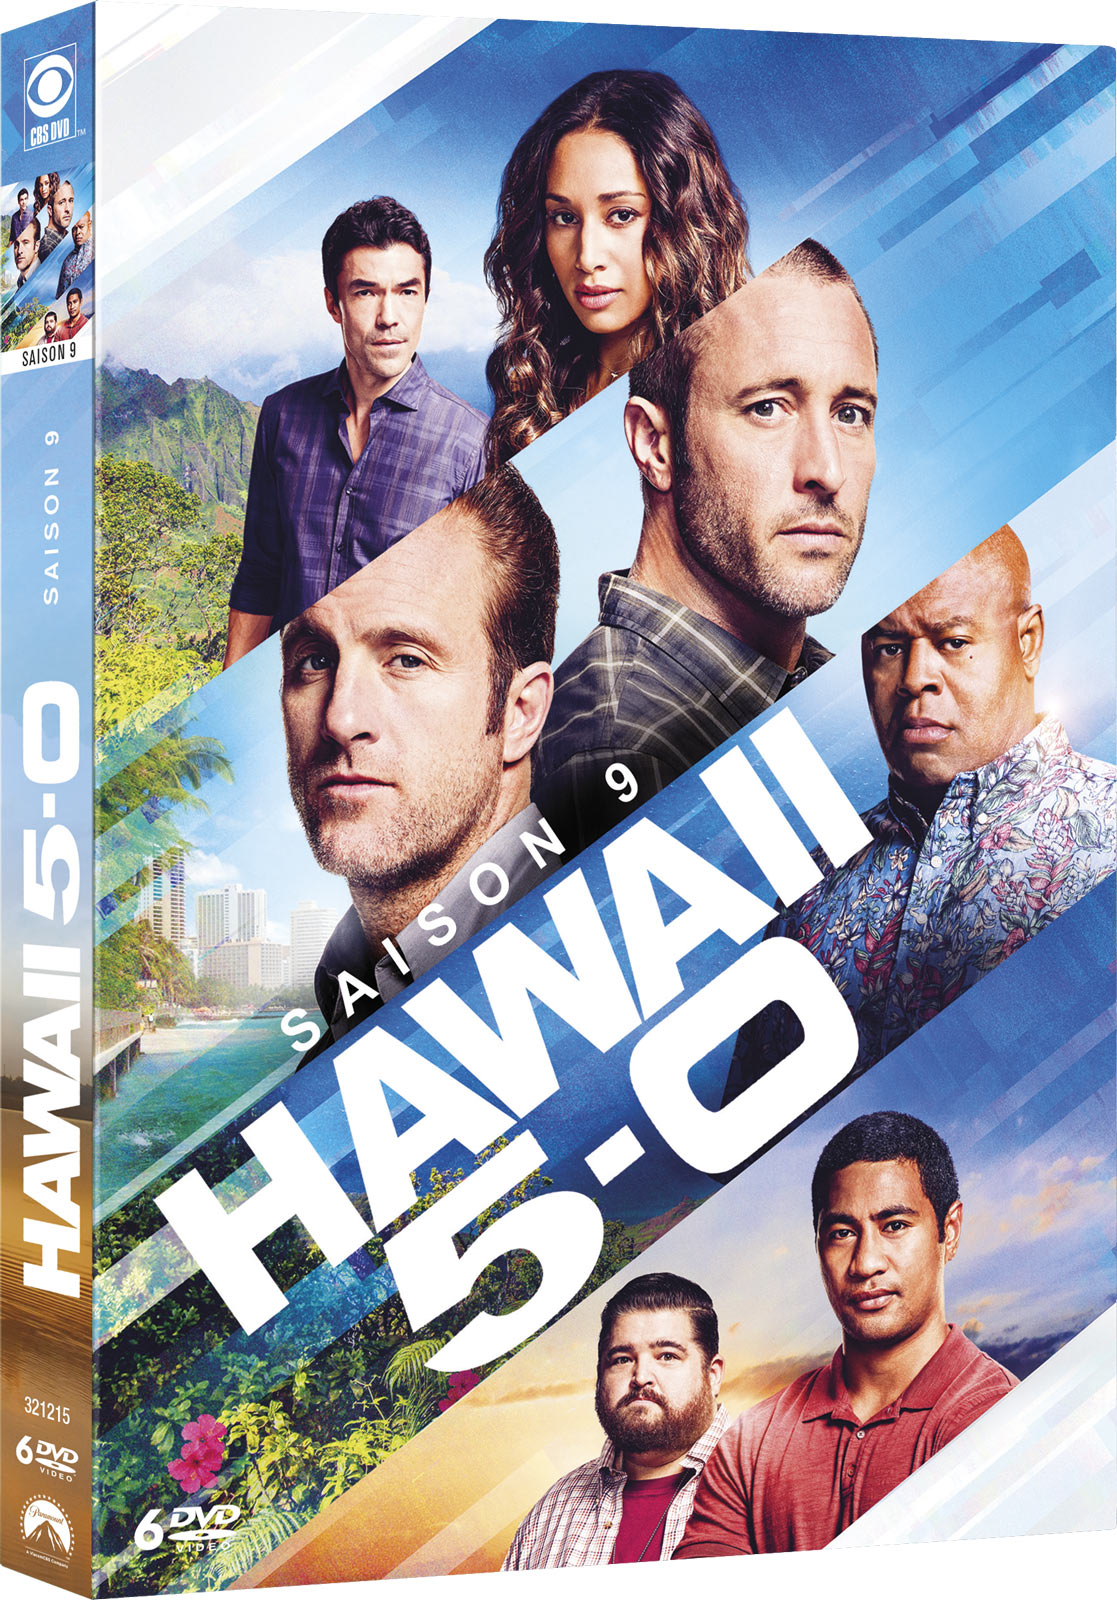 HAWAII FIVE- O S09